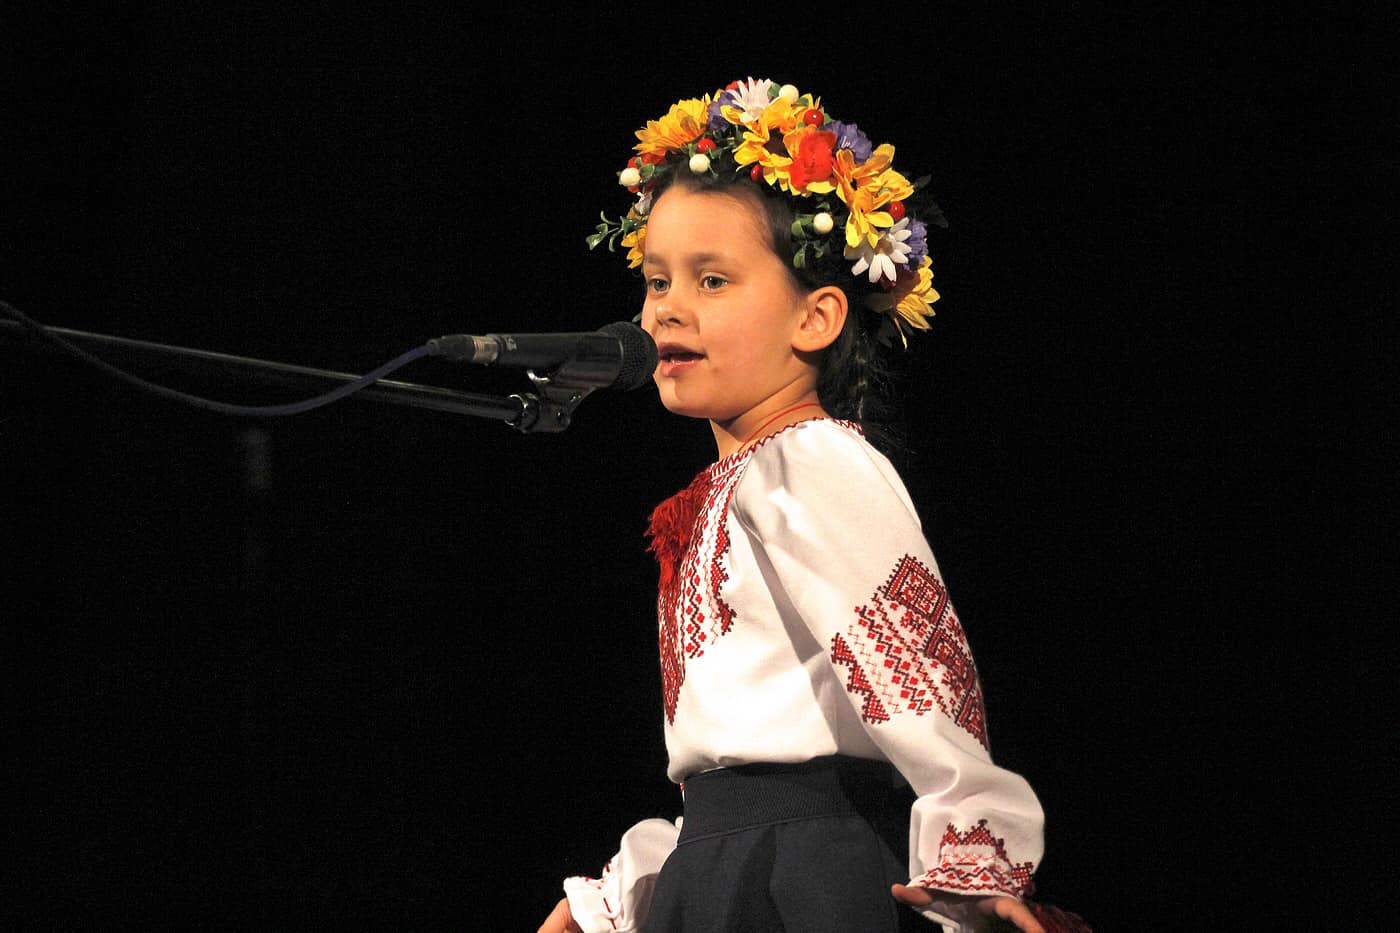 Koncert - Moja i Twoja Nadzieja z udziałem młodzieży ukraińskiej.